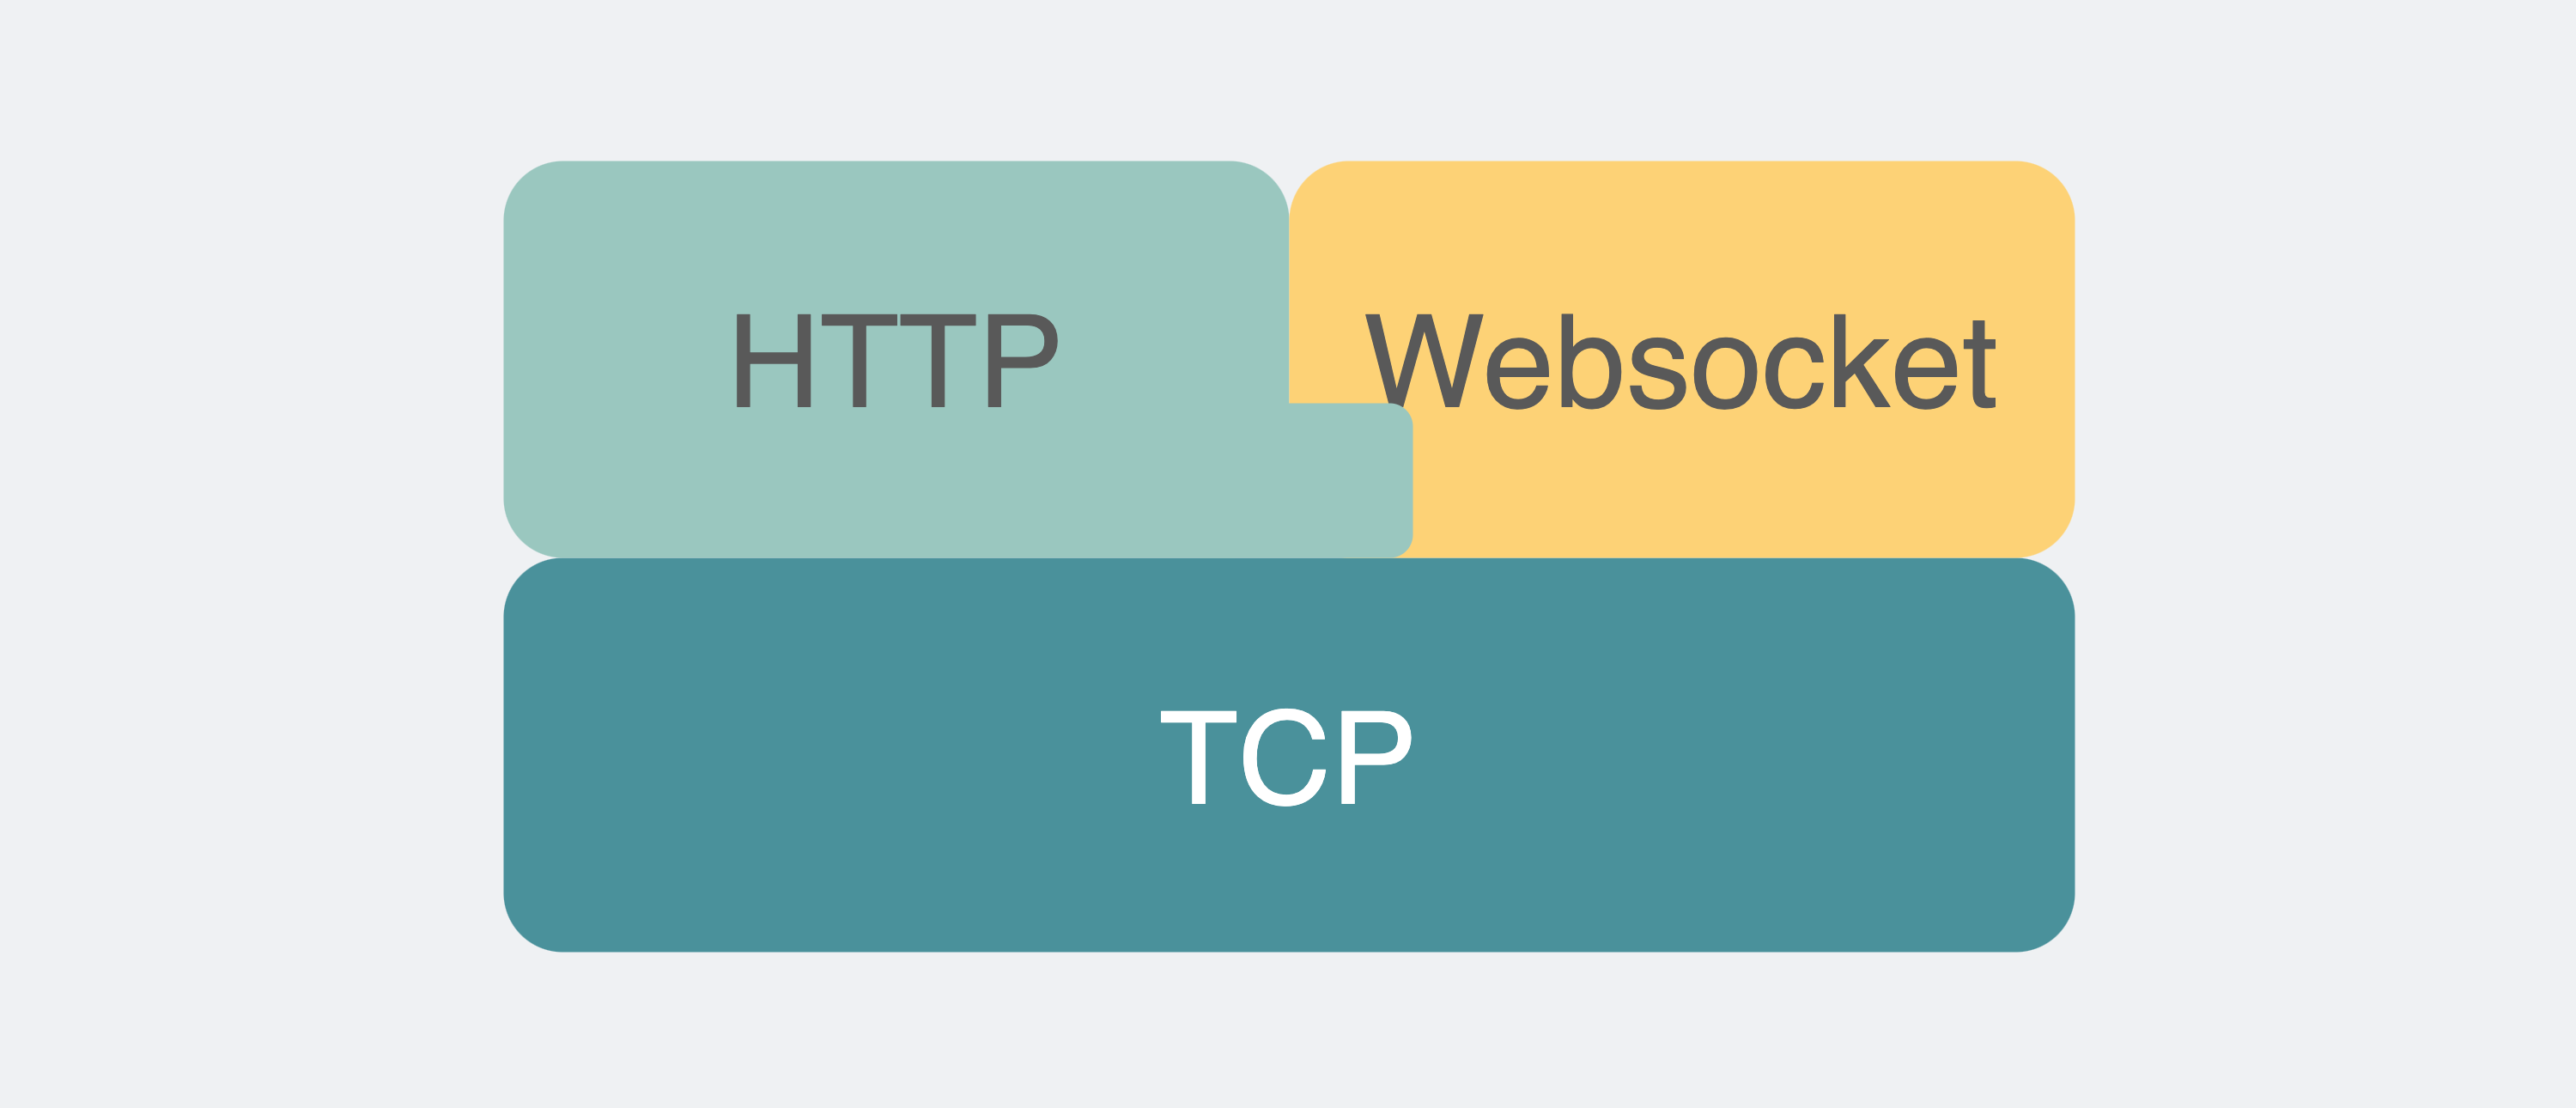 HTTP和websocket的关系